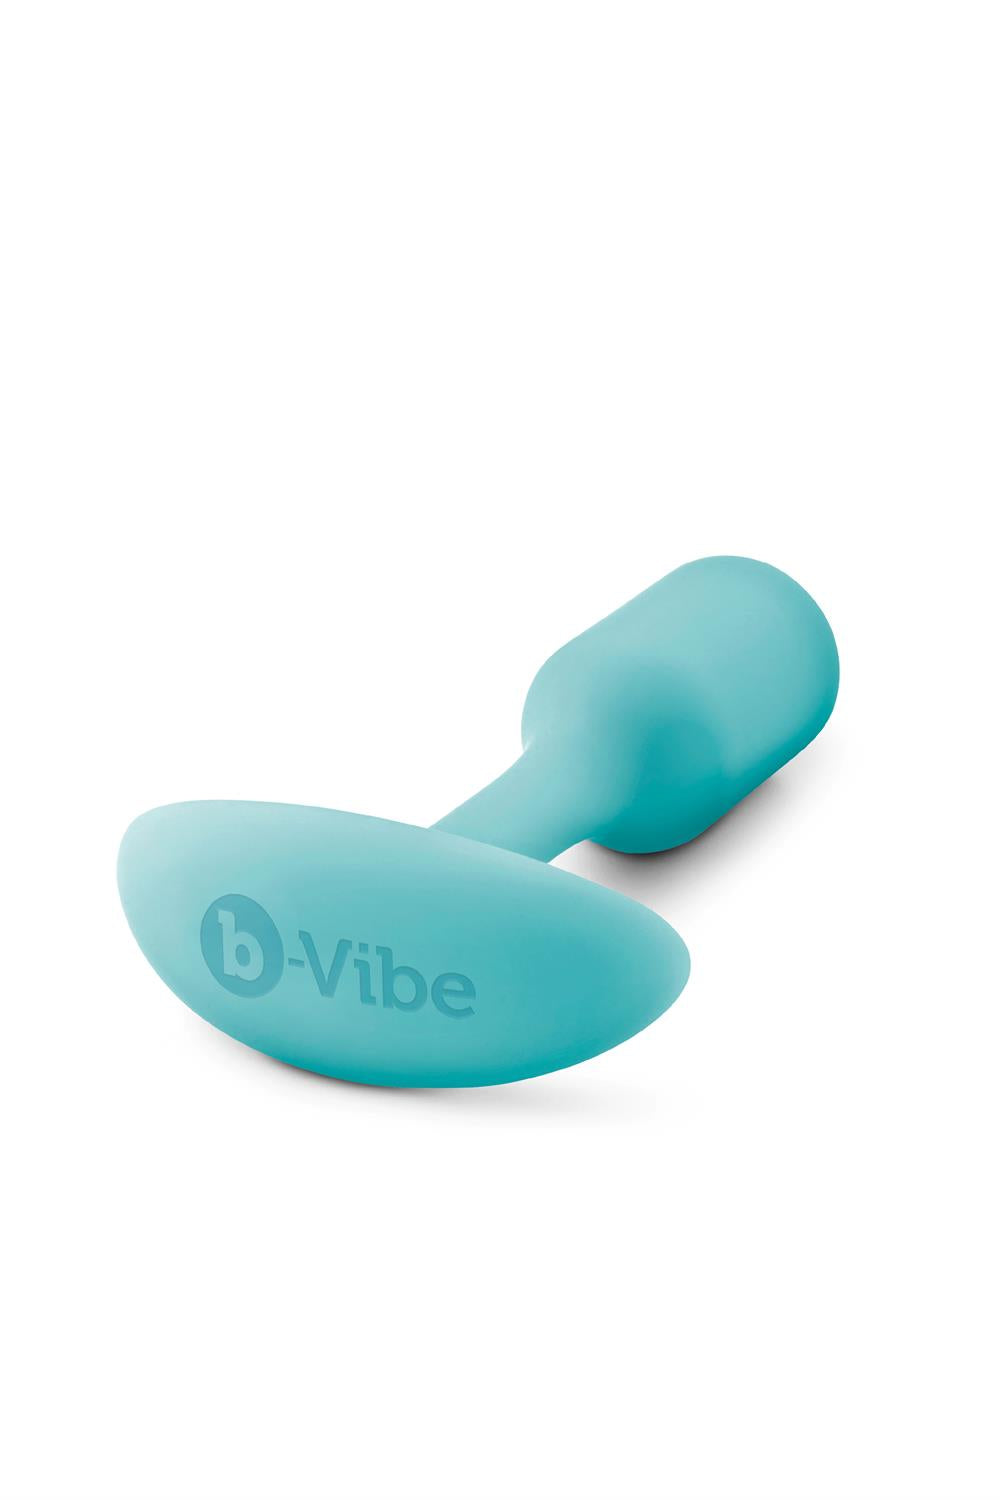 B-vibe Snug Plug 1 Mint